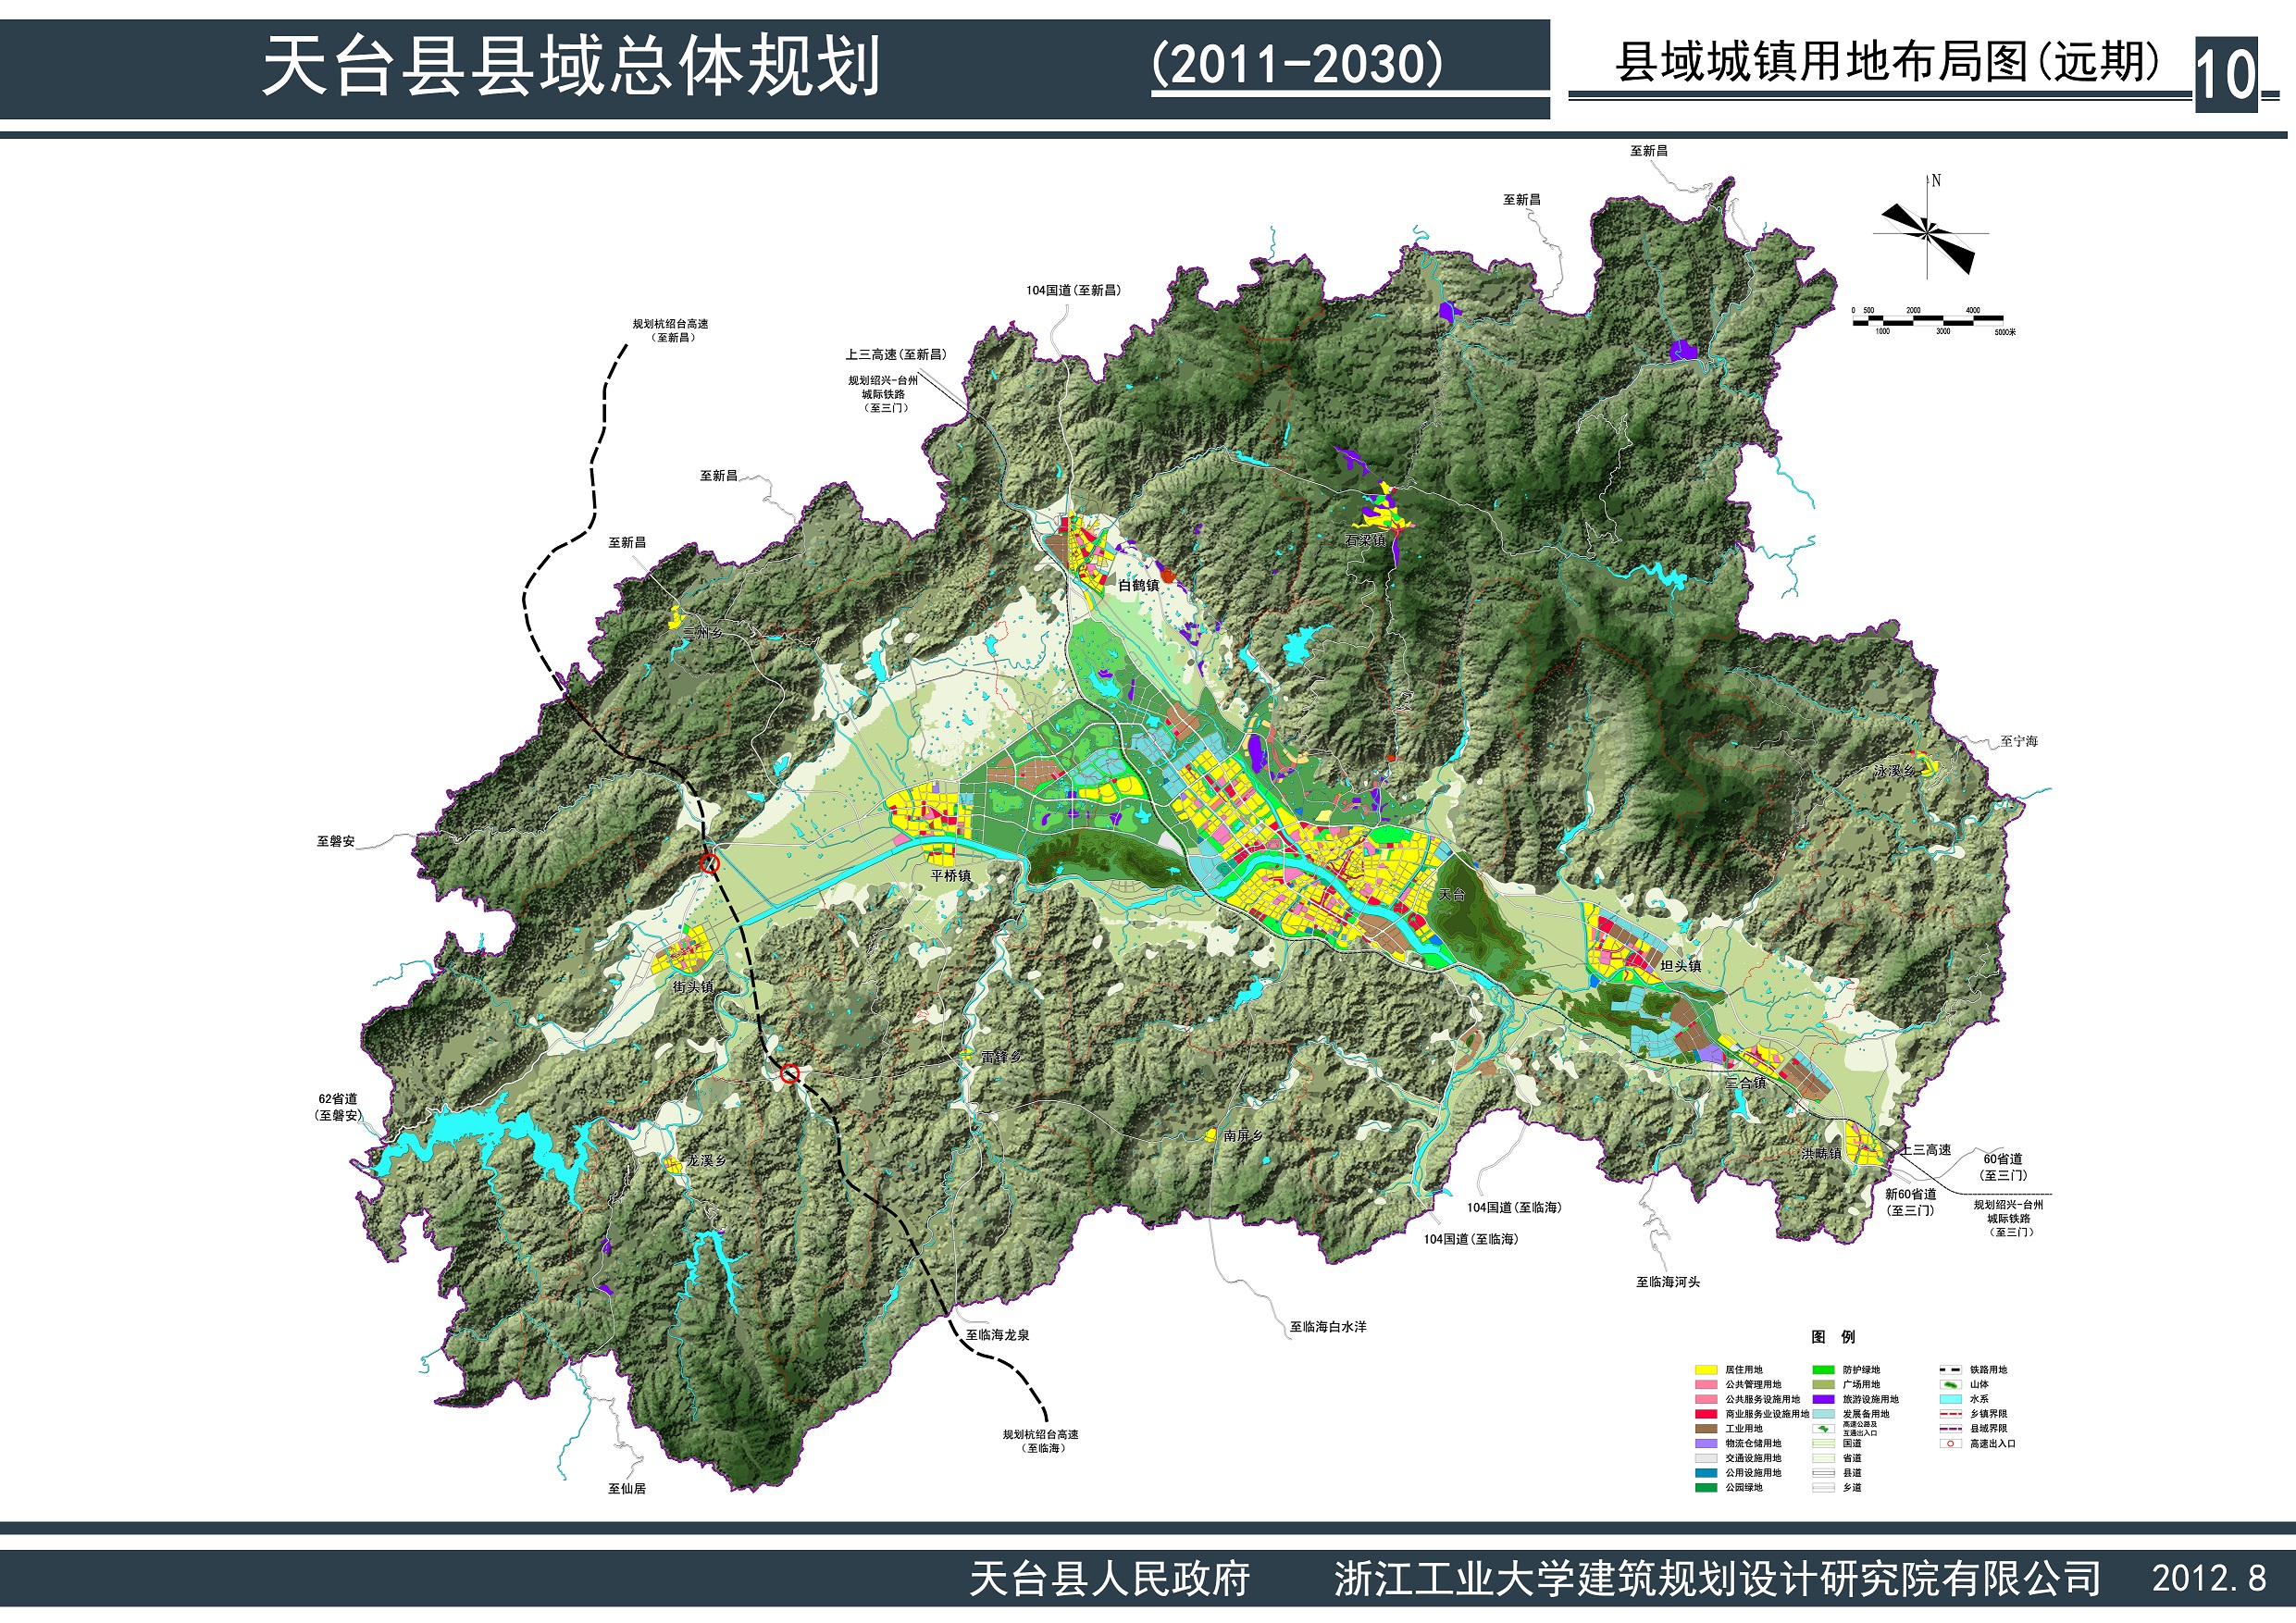 天台县县域总体规划图(2011-2030)